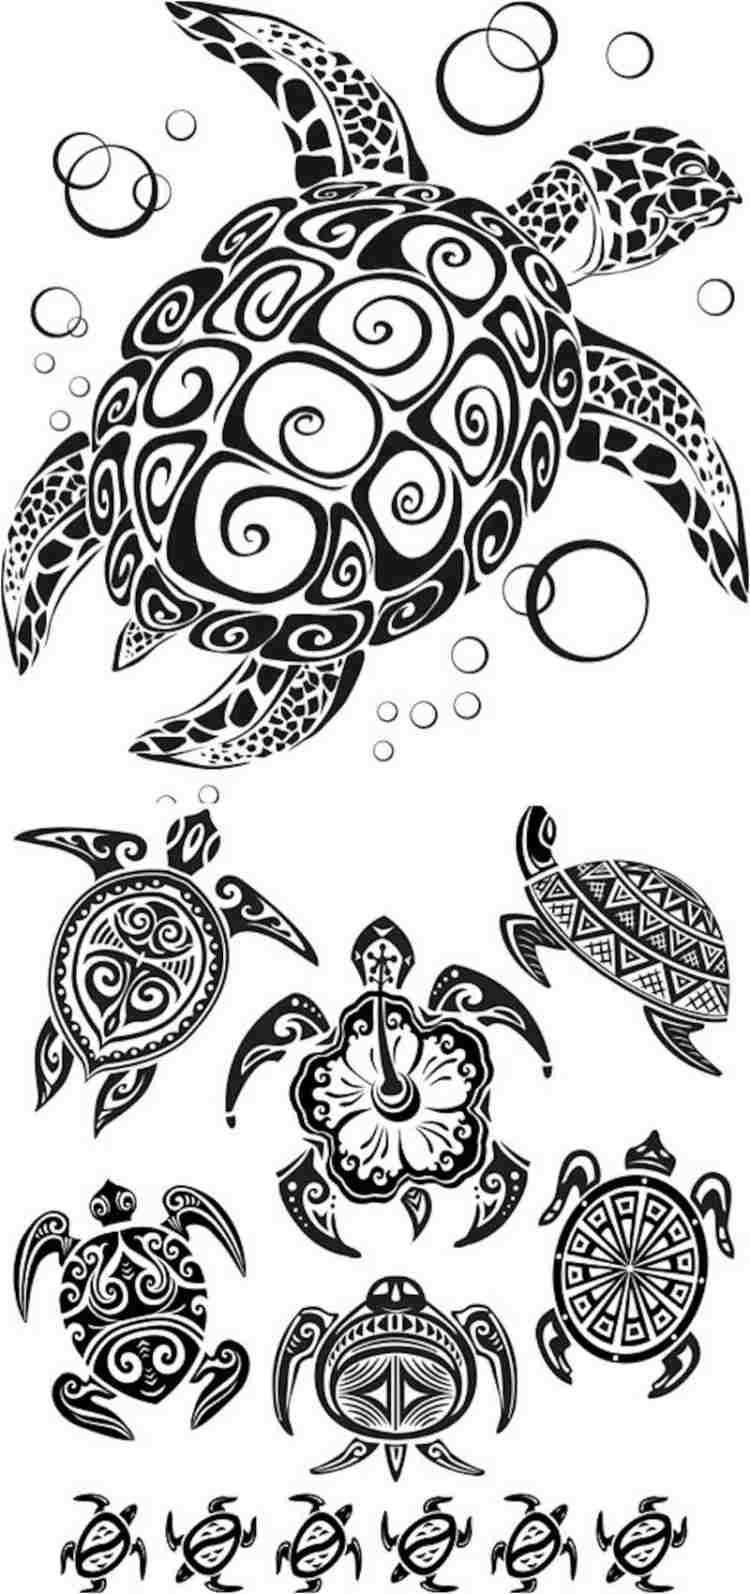 Schildkroten Designs Mit Tribal Look In 2020 Tattoo Schablonen Hawaiianisches Tattoo Tattoo Vorlagen